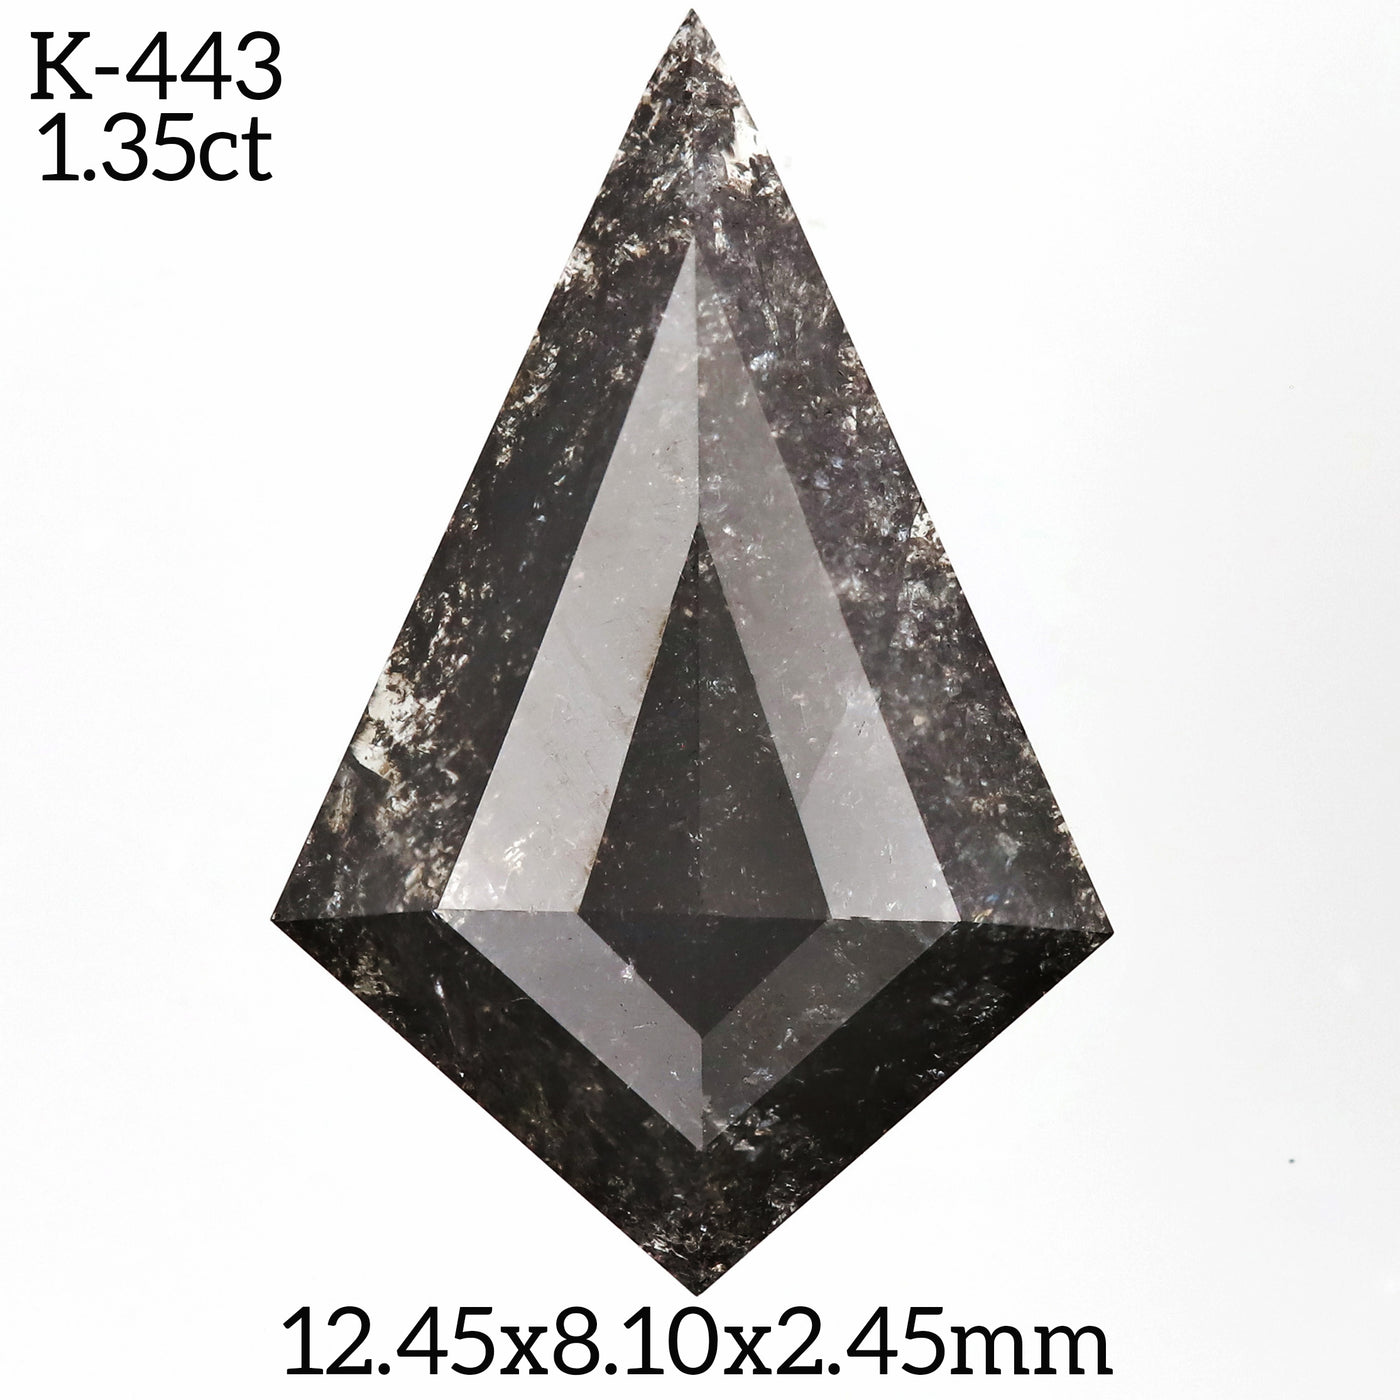 K443 - Salt and pepper kite diamond